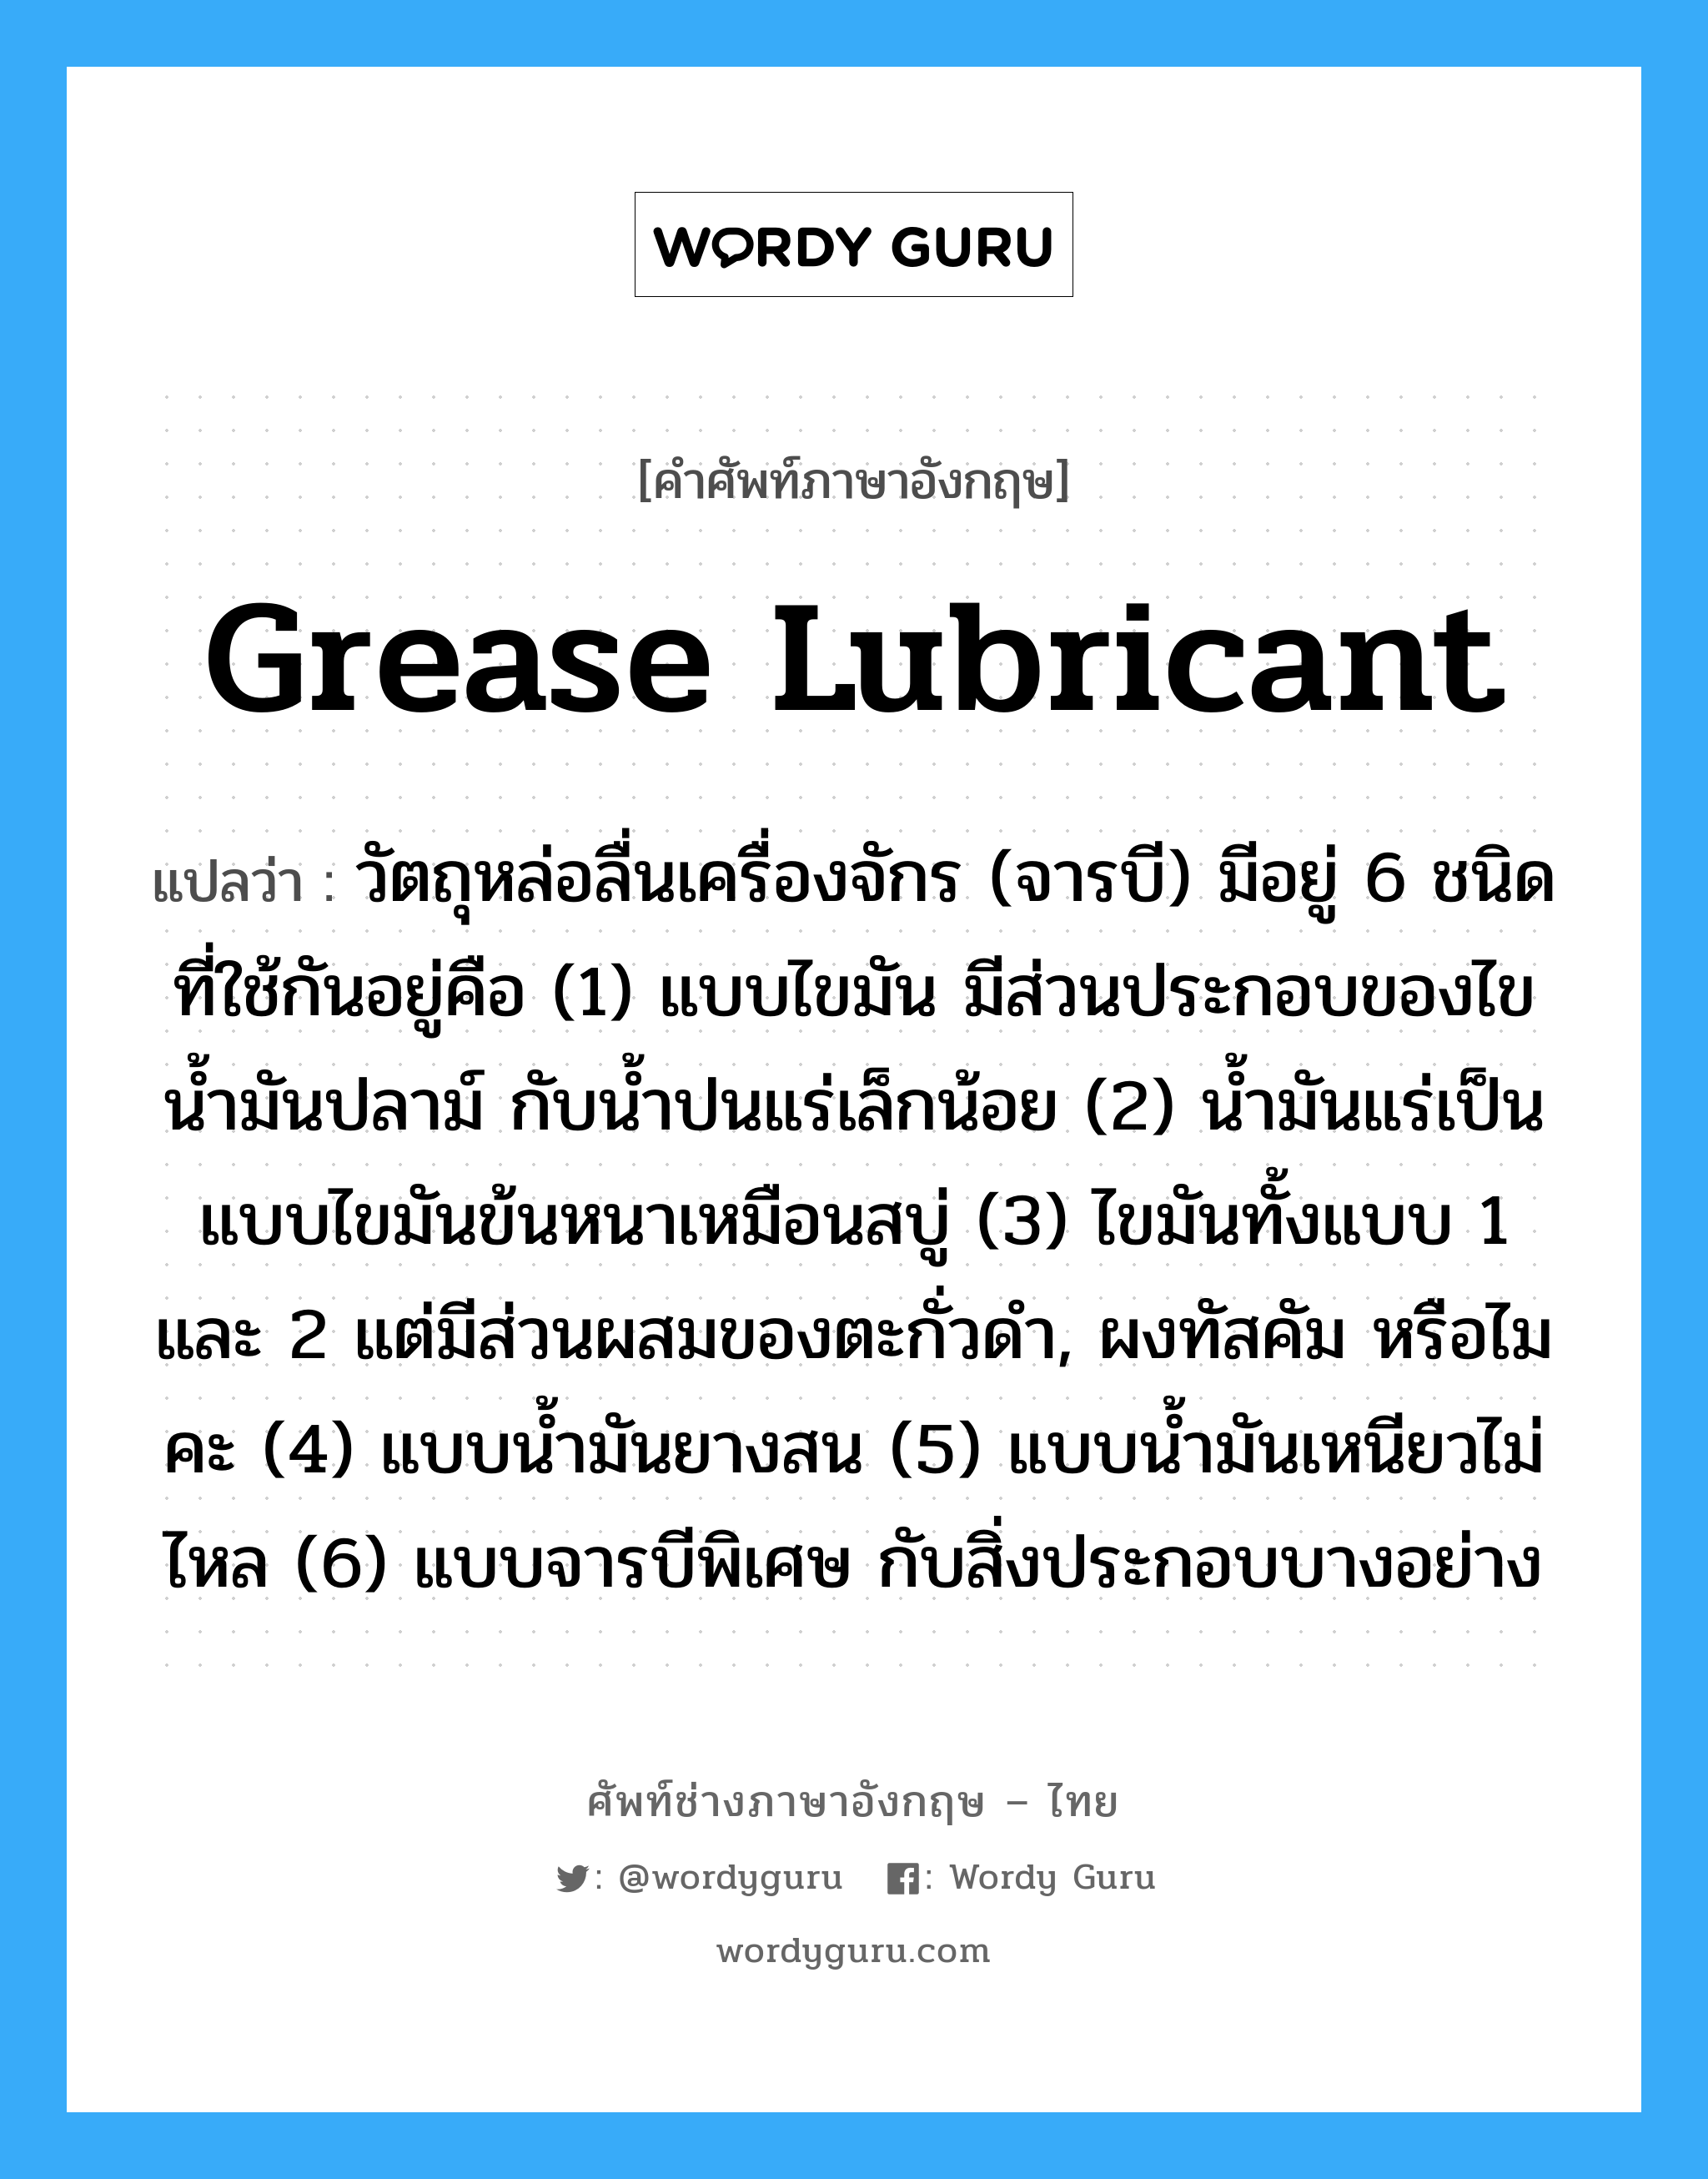 grease lubricant แปลว่า?, คำศัพท์ช่างภาษาอังกฤษ - ไทย grease lubricant คำศัพท์ภาษาอังกฤษ grease lubricant แปลว่า วัตถุหล่อลื่นเครื่องจักร (จารบี) มีอยู่ 6 ชนิดที่ใช้กันอยู่คือ (1) แบบไขมัน มีส่วนประกอบของไข น้ำมันปลาม์ กับน้ำปนแร่เล็กน้อย (2) น้ำมันแร่เป็นแบบไขมันข้นหนาเหมือนสบู่ (3) ไขมันทั้งแบบ 1 และ 2 แต่มีส่วนผสมของตะกั่วดำ, ผงทัสคัม หรือไมคะ (4) แบบน้ำมันยางสน (5) แบบน้ำมันเหนียวไม่ไหล (6) แบบจารบีพิเศษ กับสิ่งประกอบบางอย่าง